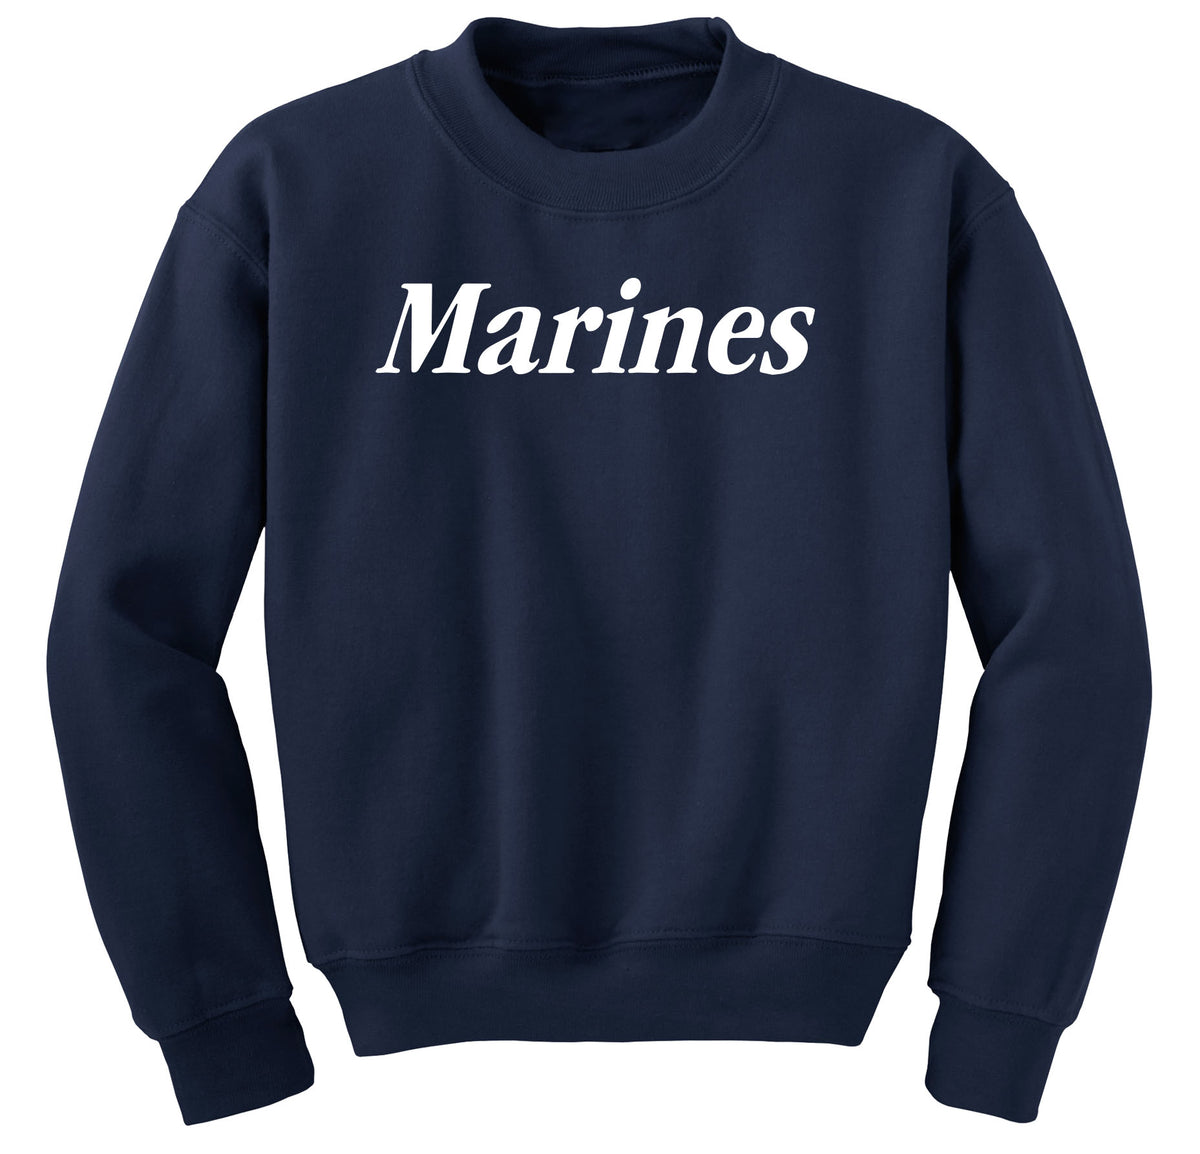 Classic White Marines Sweatshirt